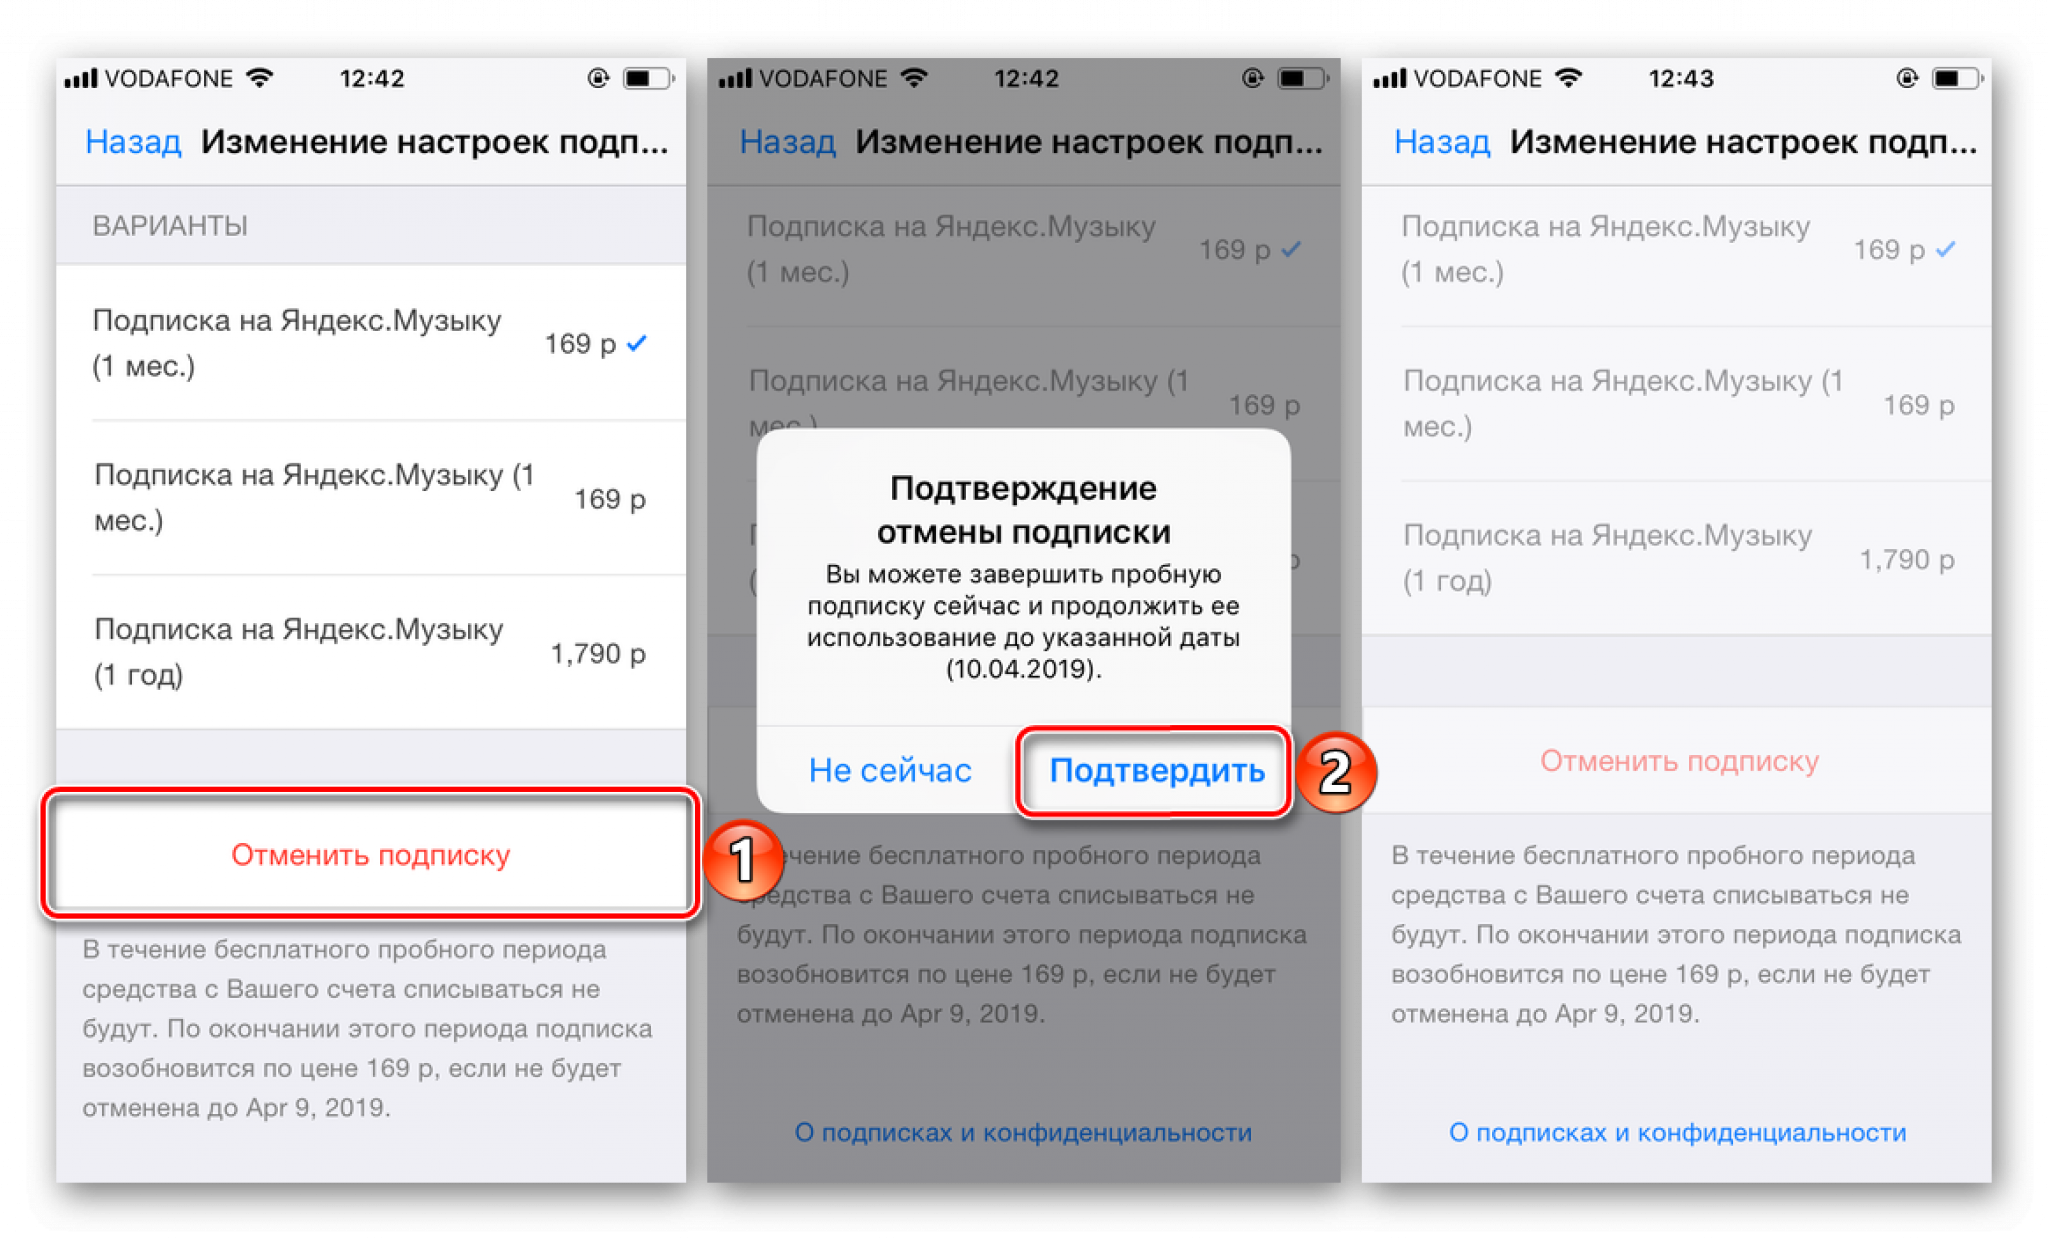 Яндекс. плюс подписка - как отключить на андроиде и айфоне: инструкция тарифкин.ру
яндекс. плюс подписка - как отключить на андроиде и айфоне: инструкция